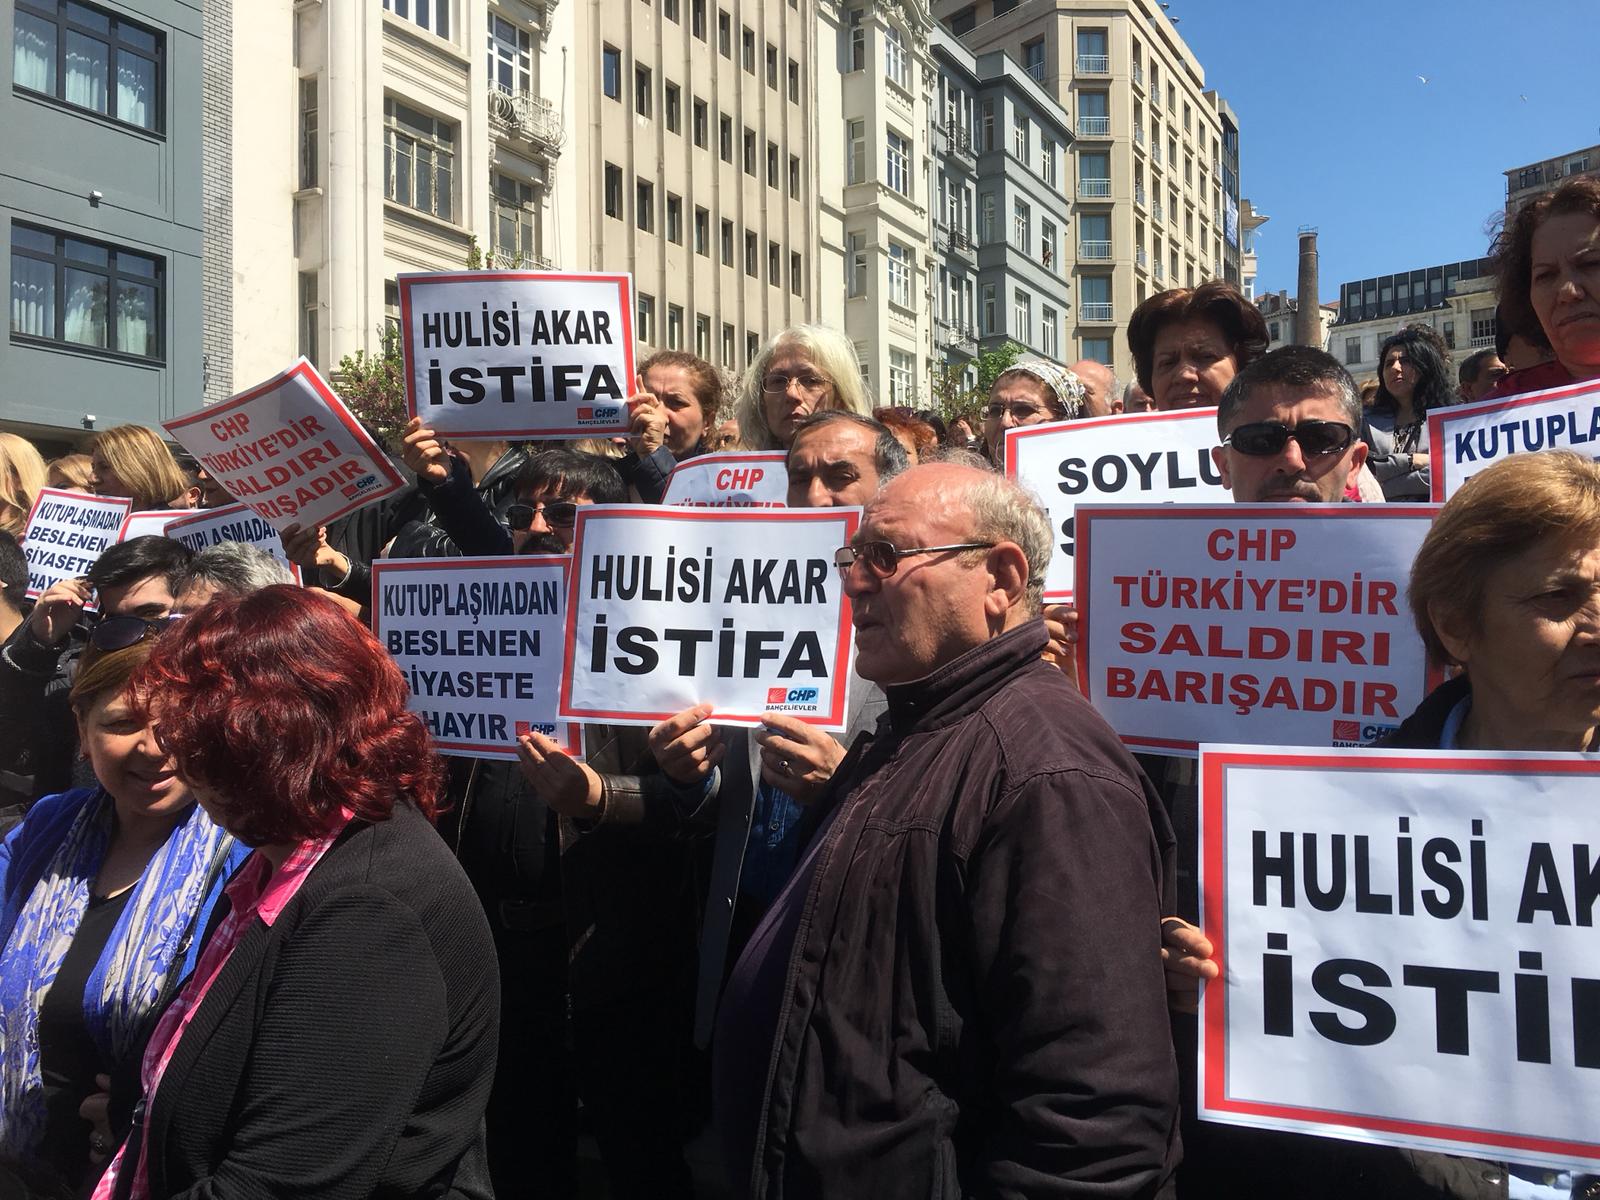 CHP İstanbul Devlet kurumları koruyamıyorsa, örgütümüz